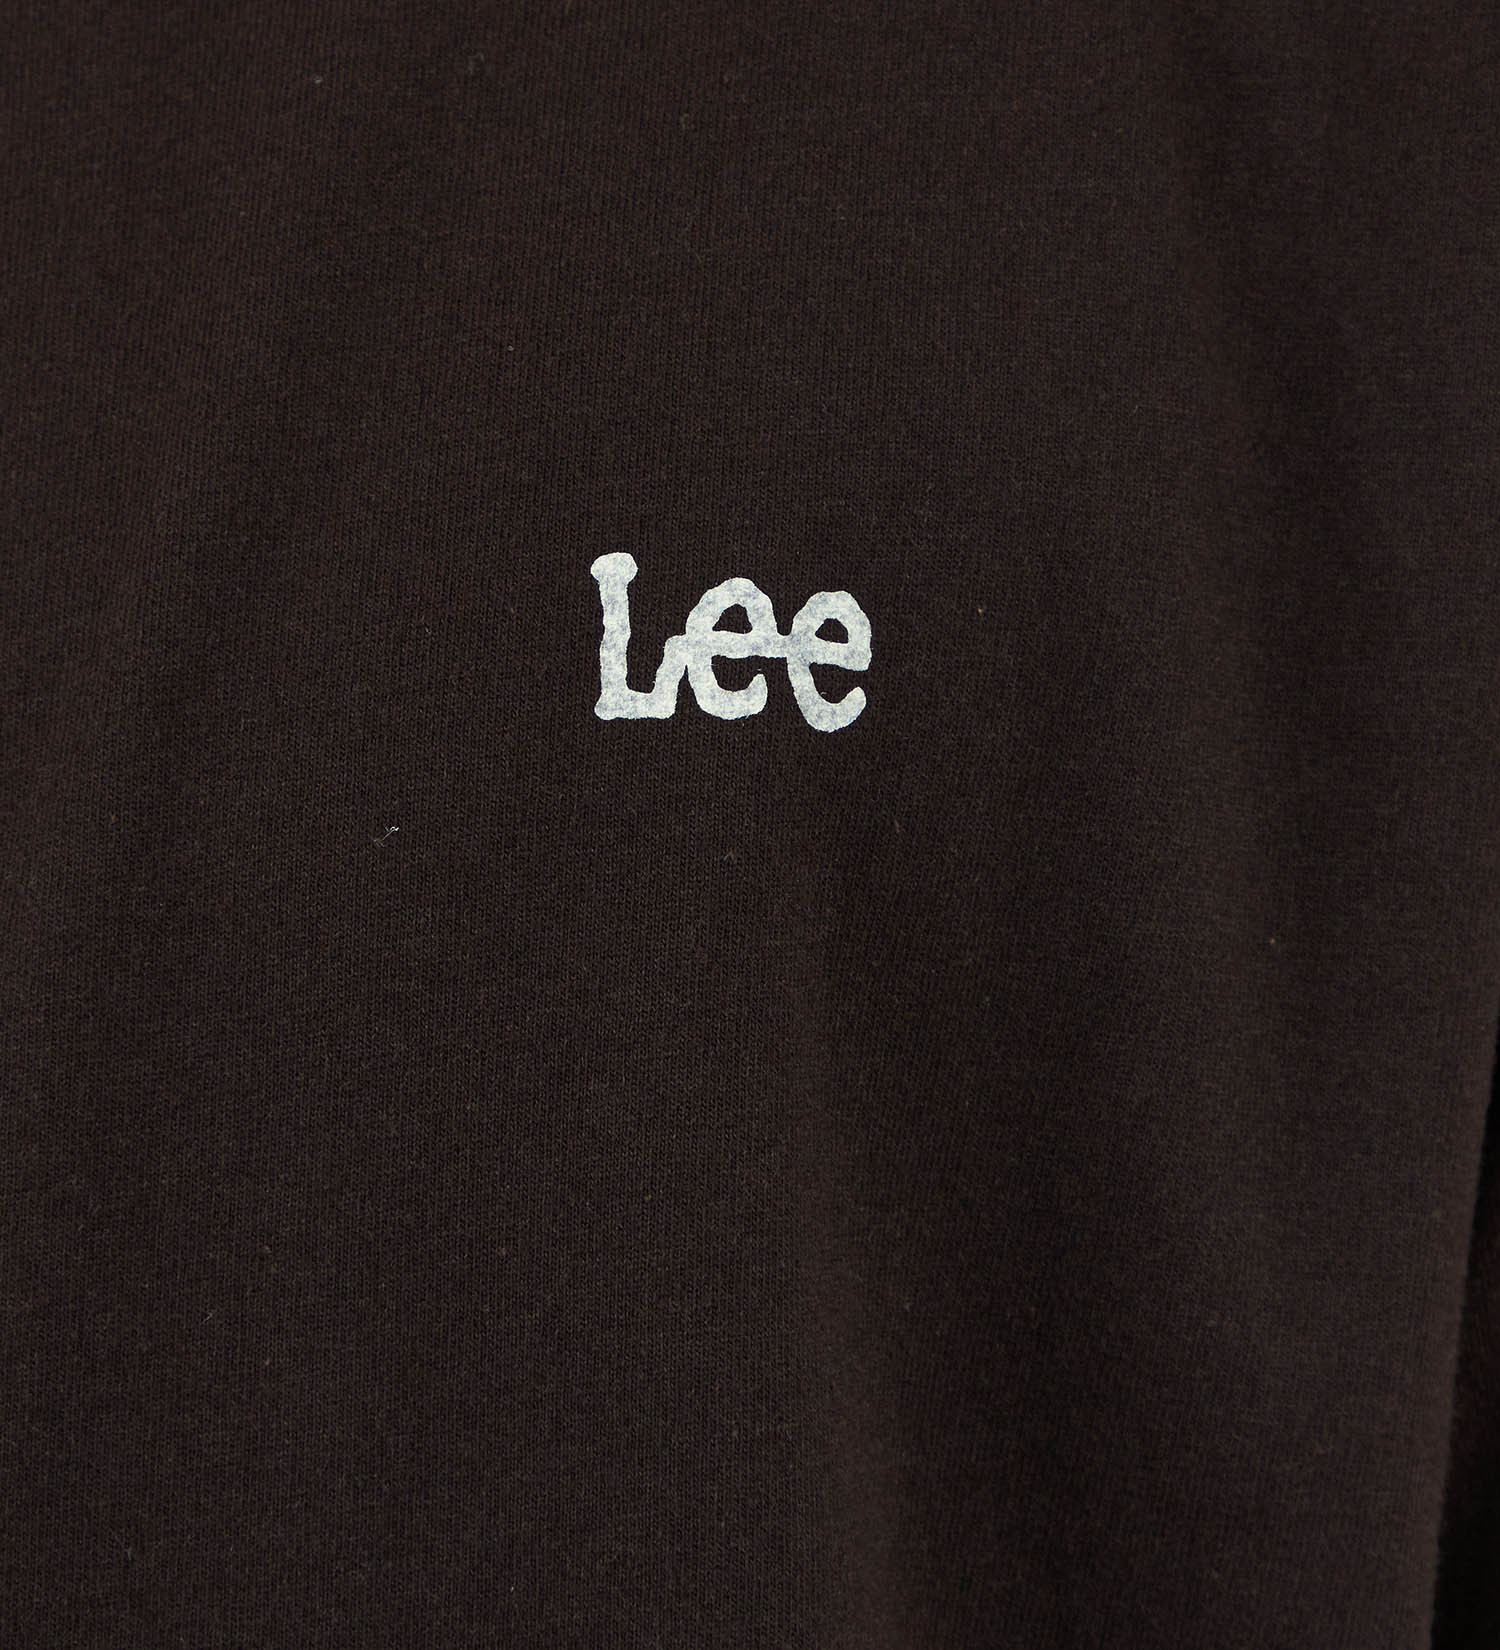 Lee(リー)の【SUMMER SALE】バックプリントTシャツ|トップス/Tシャツ/カットソー/メンズ|ブラック